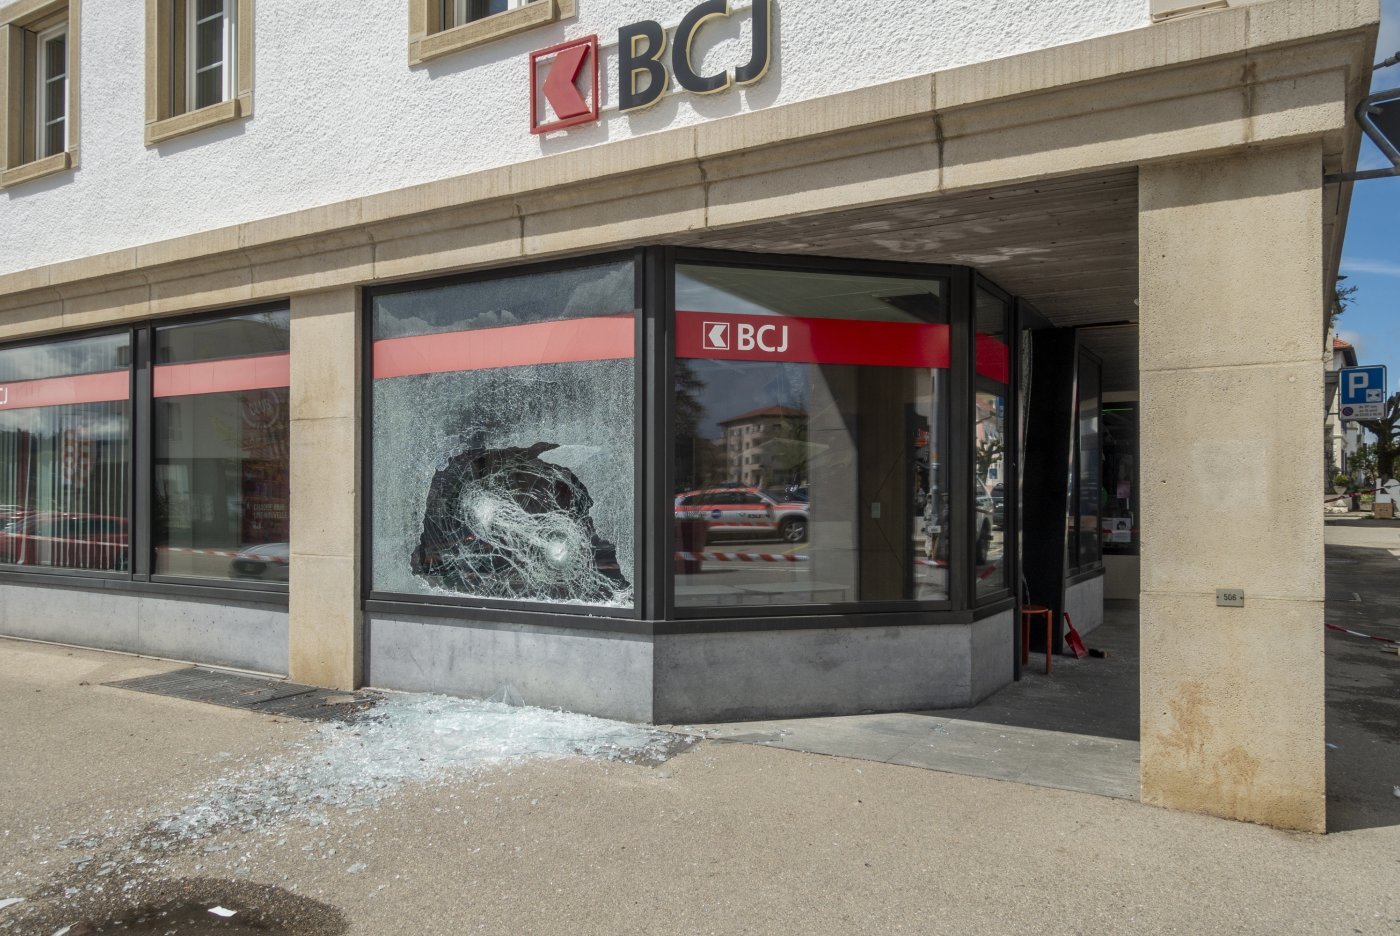 Le Bancomat de la BCJ au Noirmont a été attaqué à l’explosif.